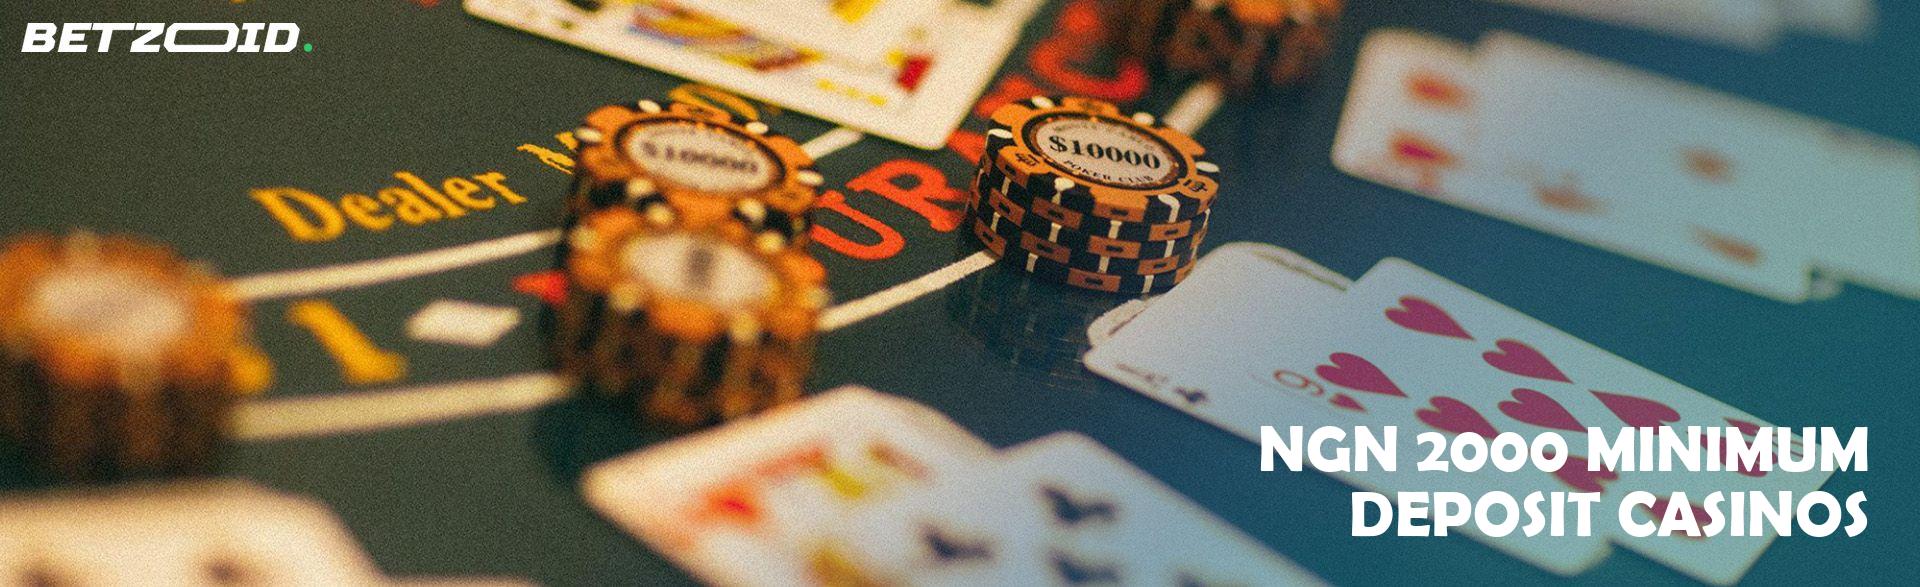 ₦2000 Minimum Deposit Casinos.